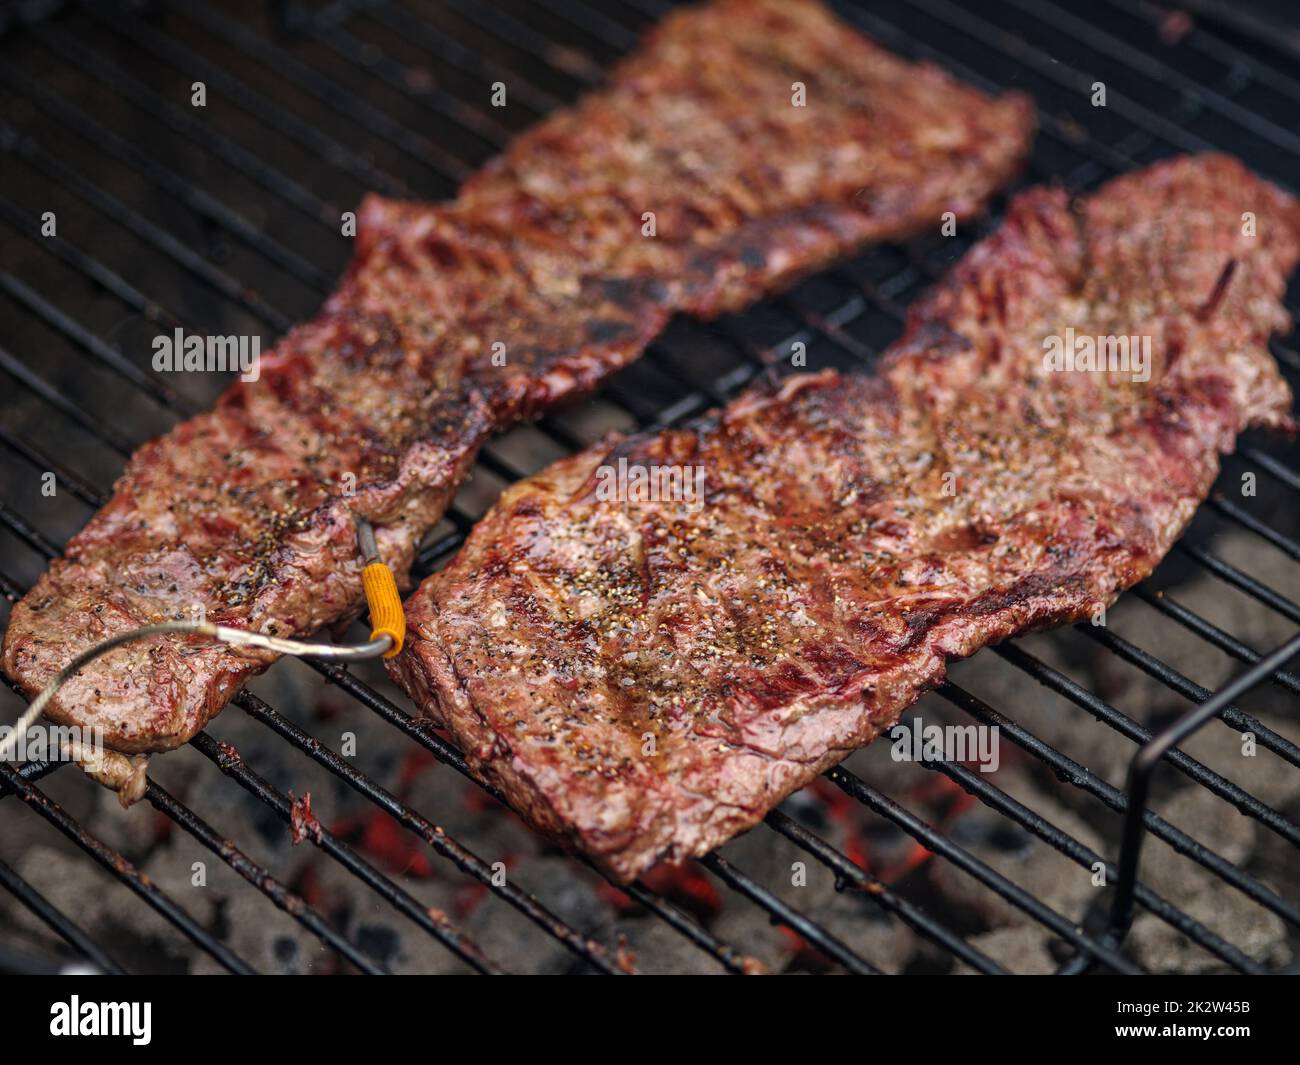 Zartes oder onglet-Steak mit Rindfleisch auf dem Grill. Grillfleisch. GRILLSPEZIALITÄTEN Stockfoto